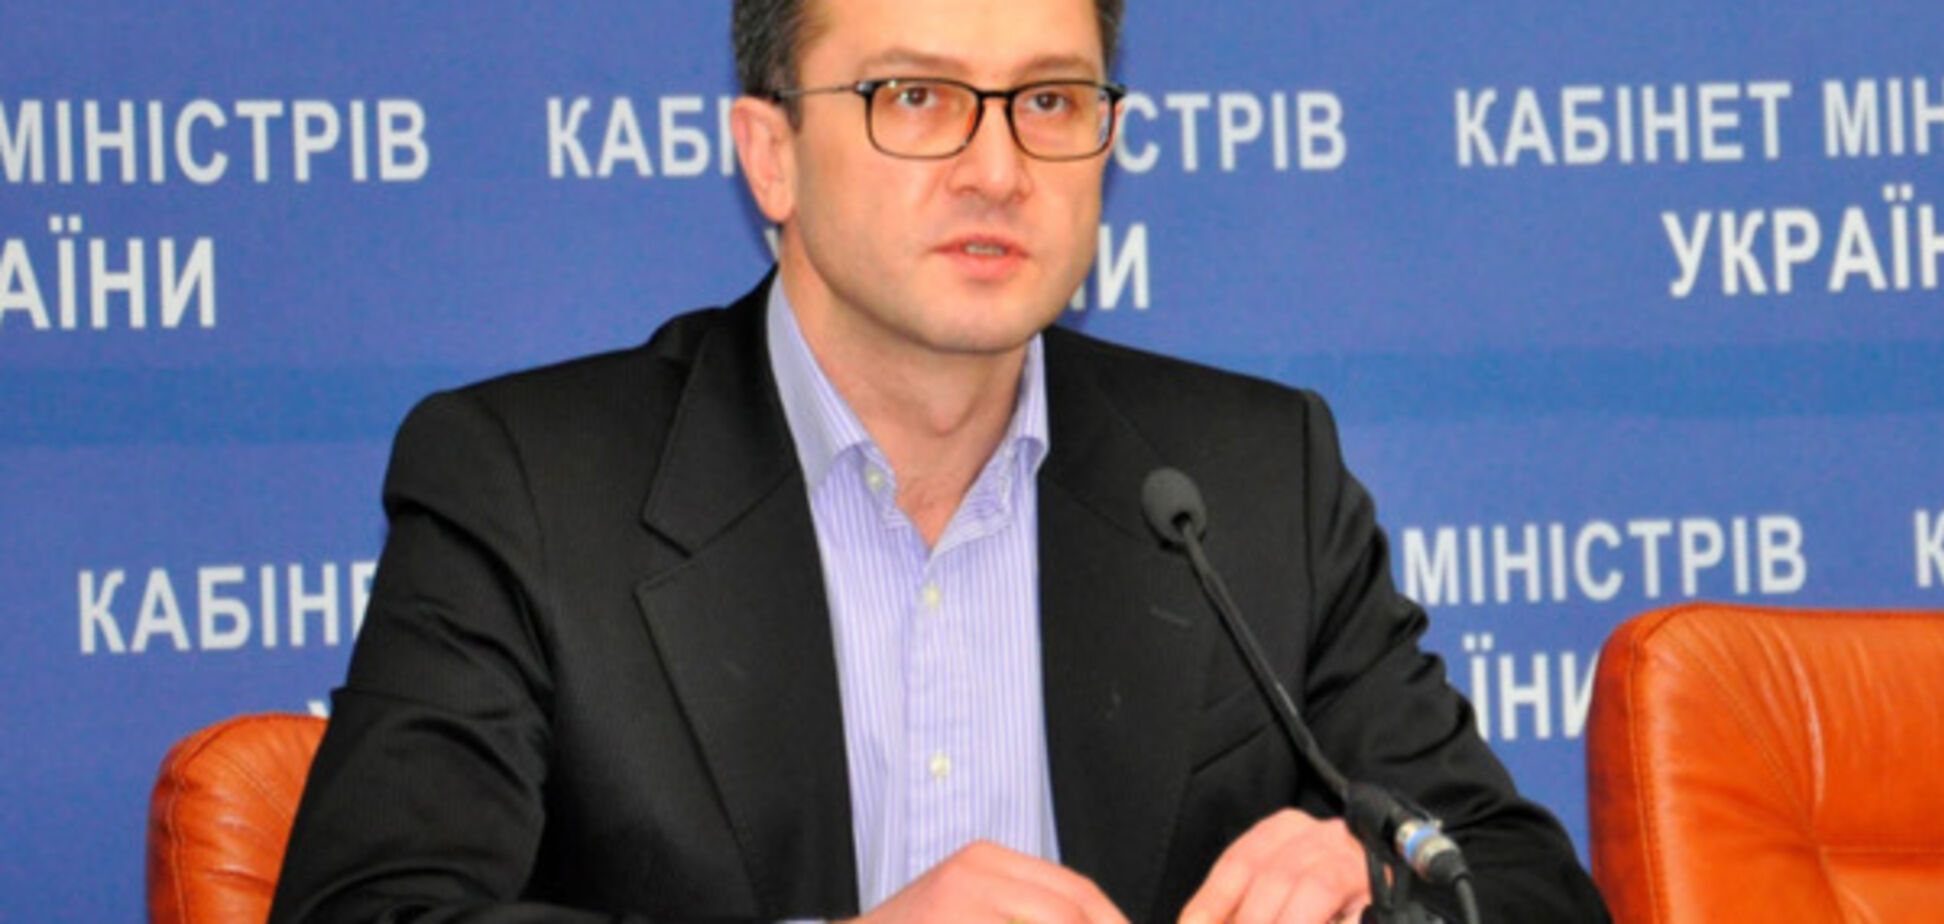 Радник Порошенко розповів, які банки в Україні слід продати